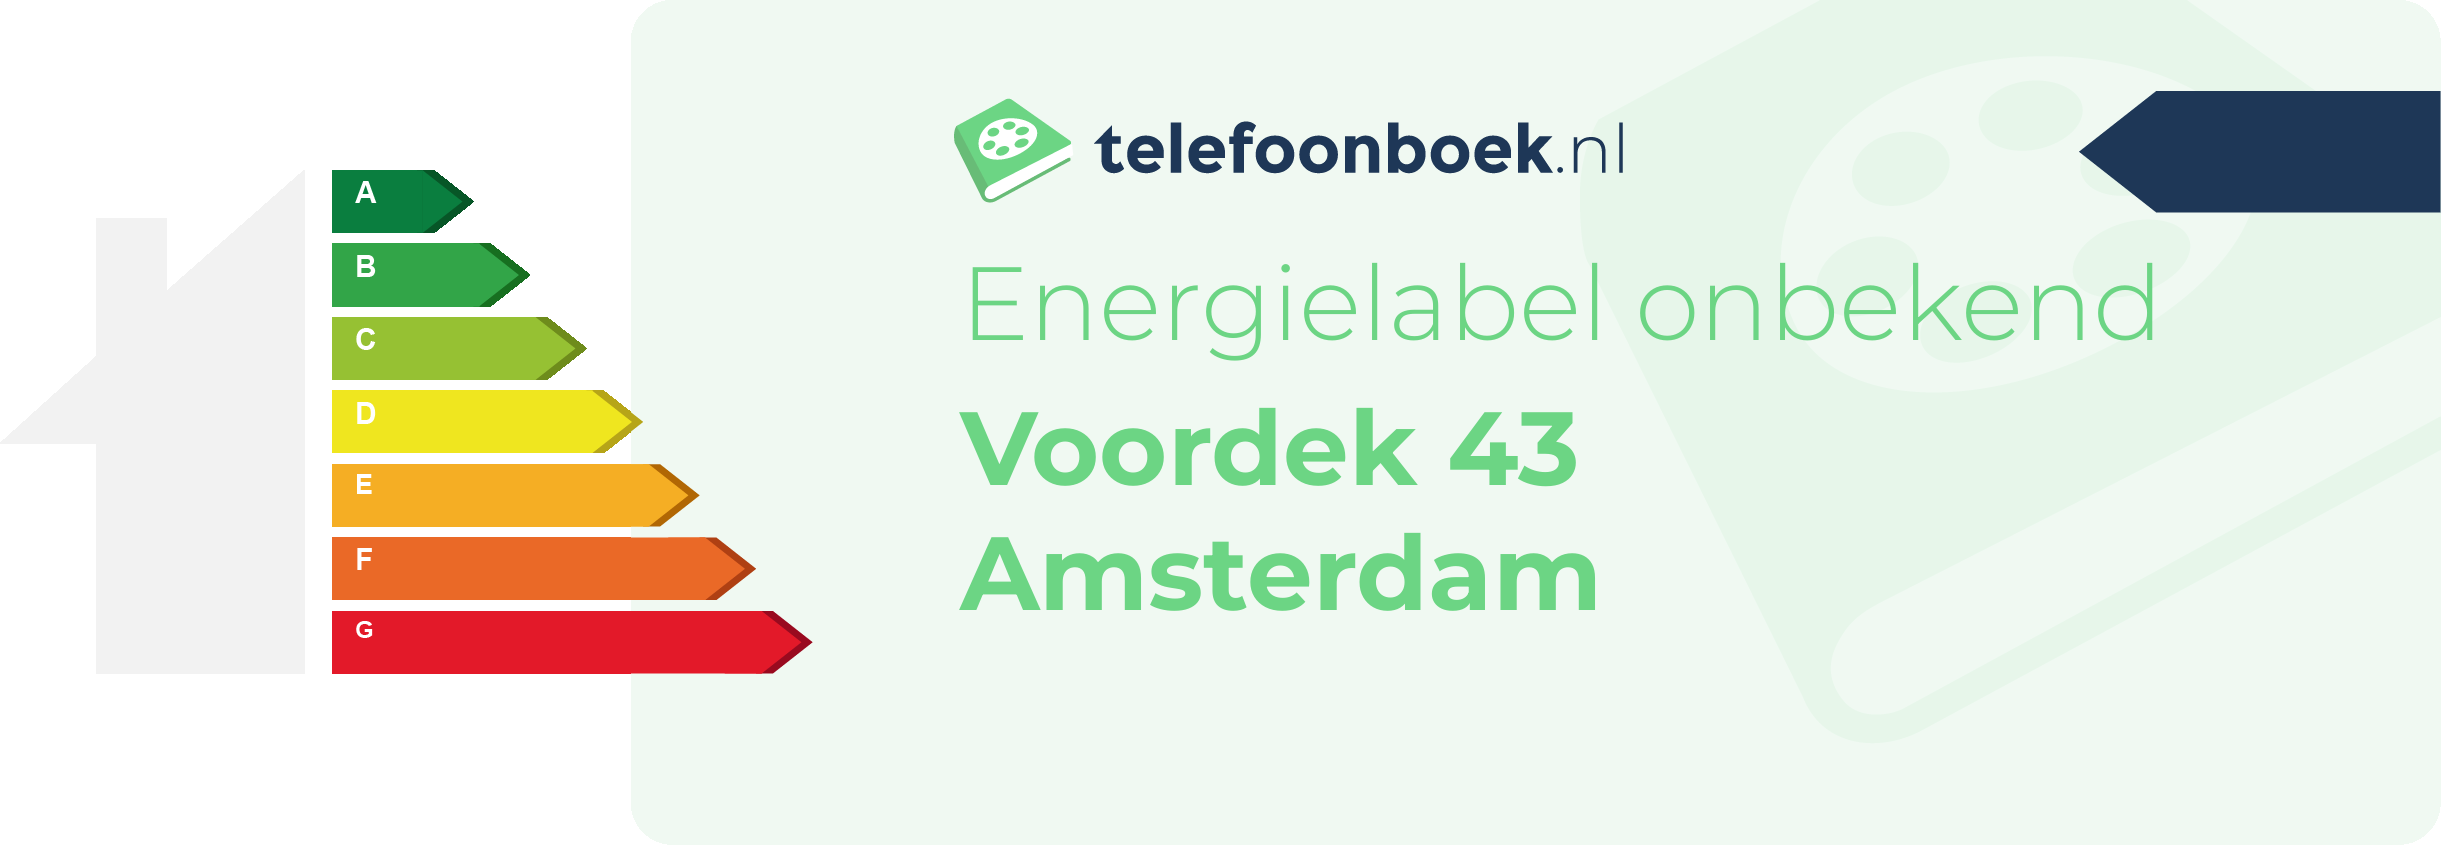 Energielabel Voordek 43 Amsterdam